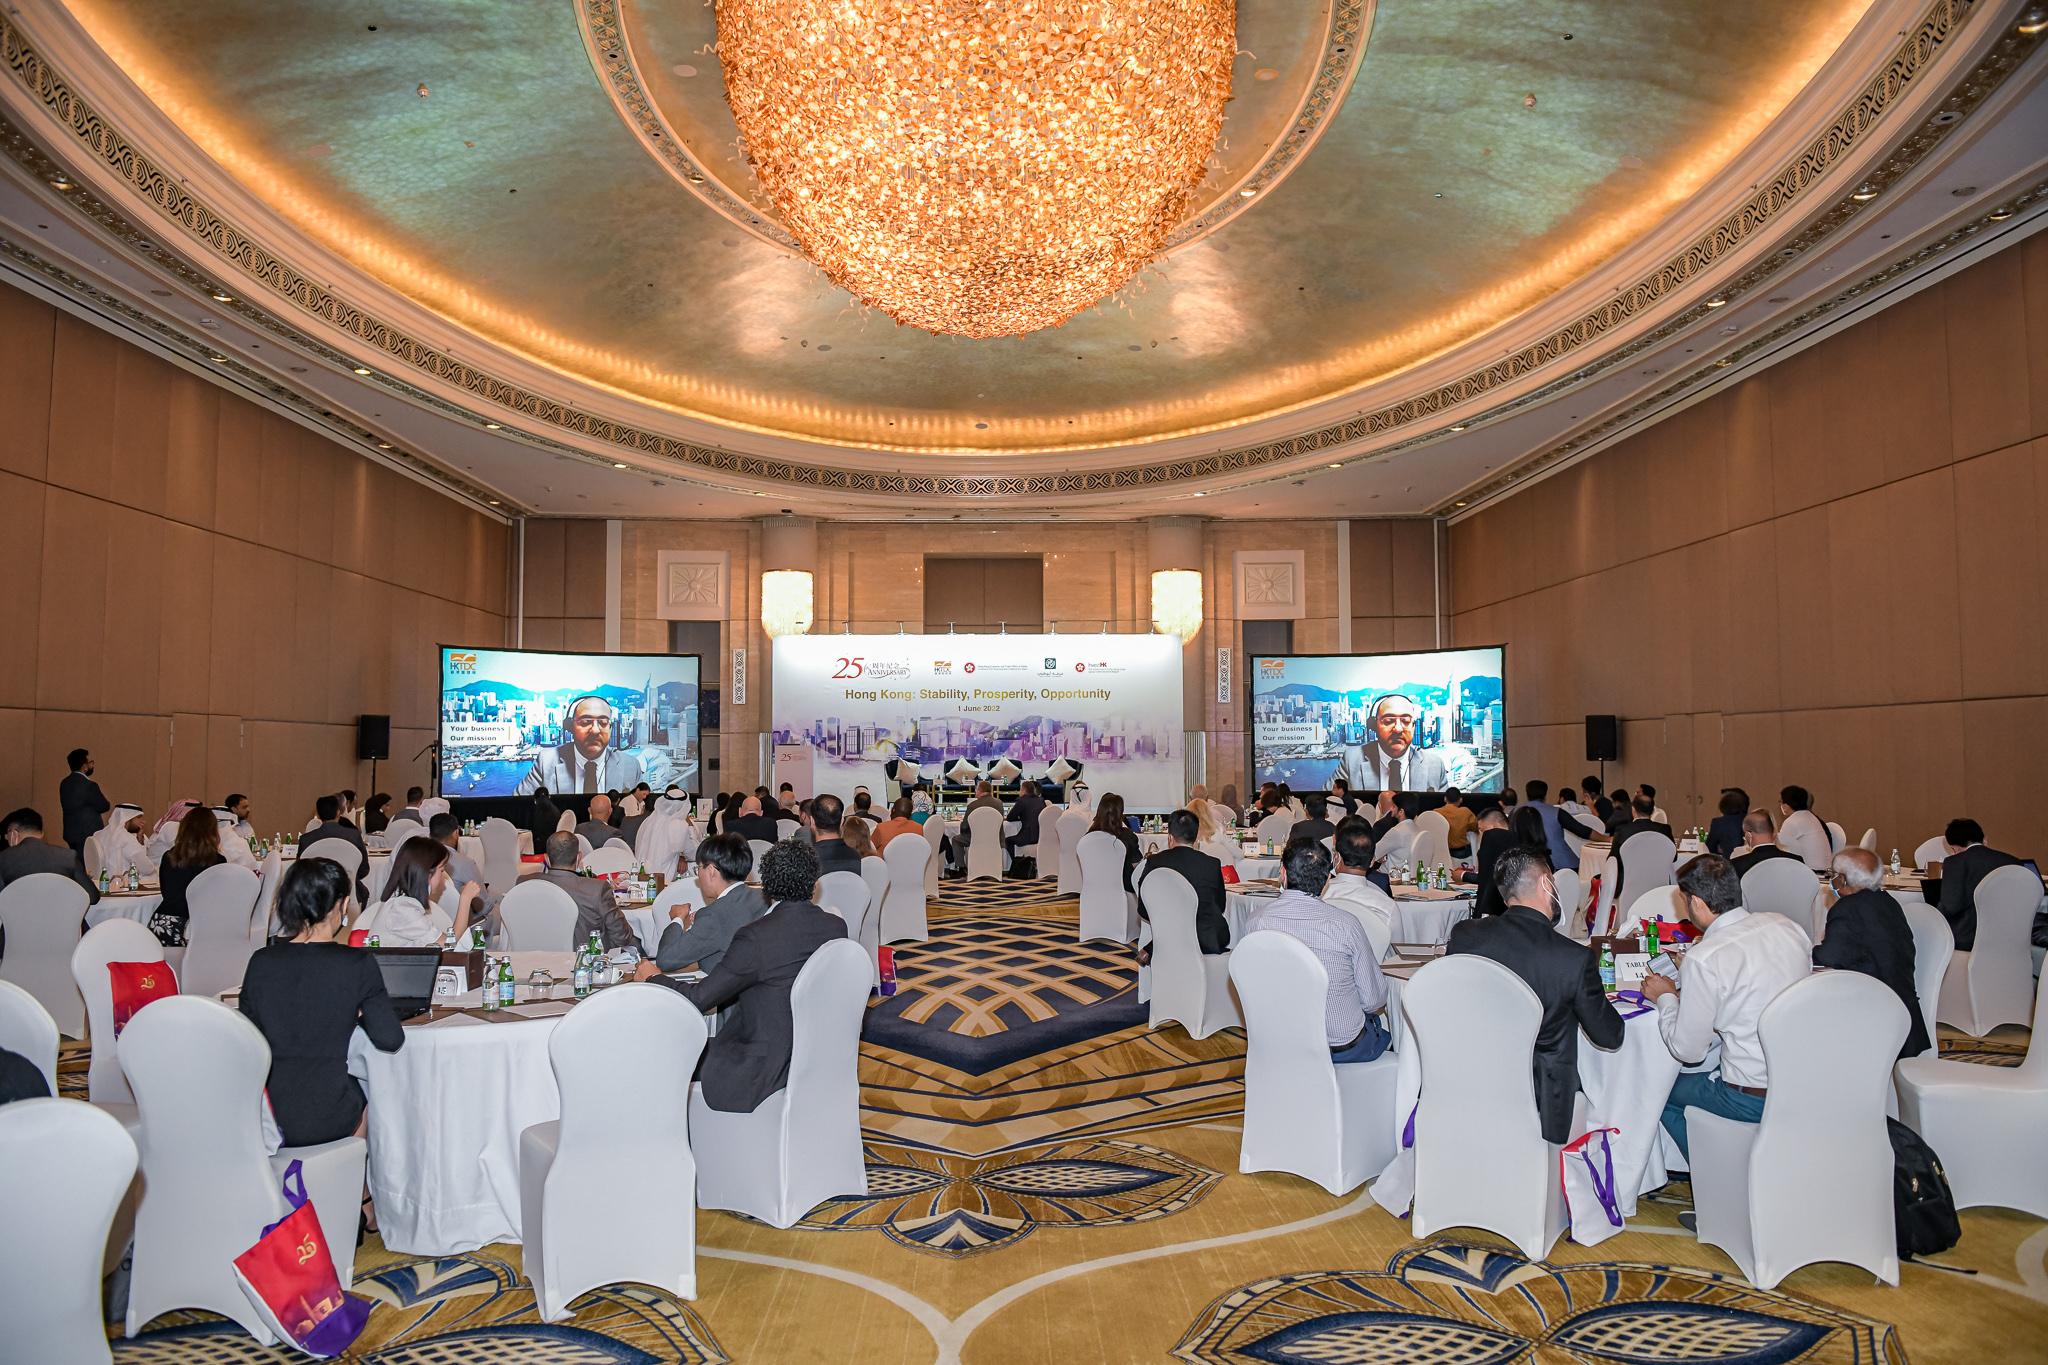 香港駐迪拜經濟貿易辦事處六月一日（阿布扎比時間）在阿布扎比舉辦商貿研討會和午宴，慶祝香港特別行政區成立二十五周年。圖示嘉賓出席研討會。